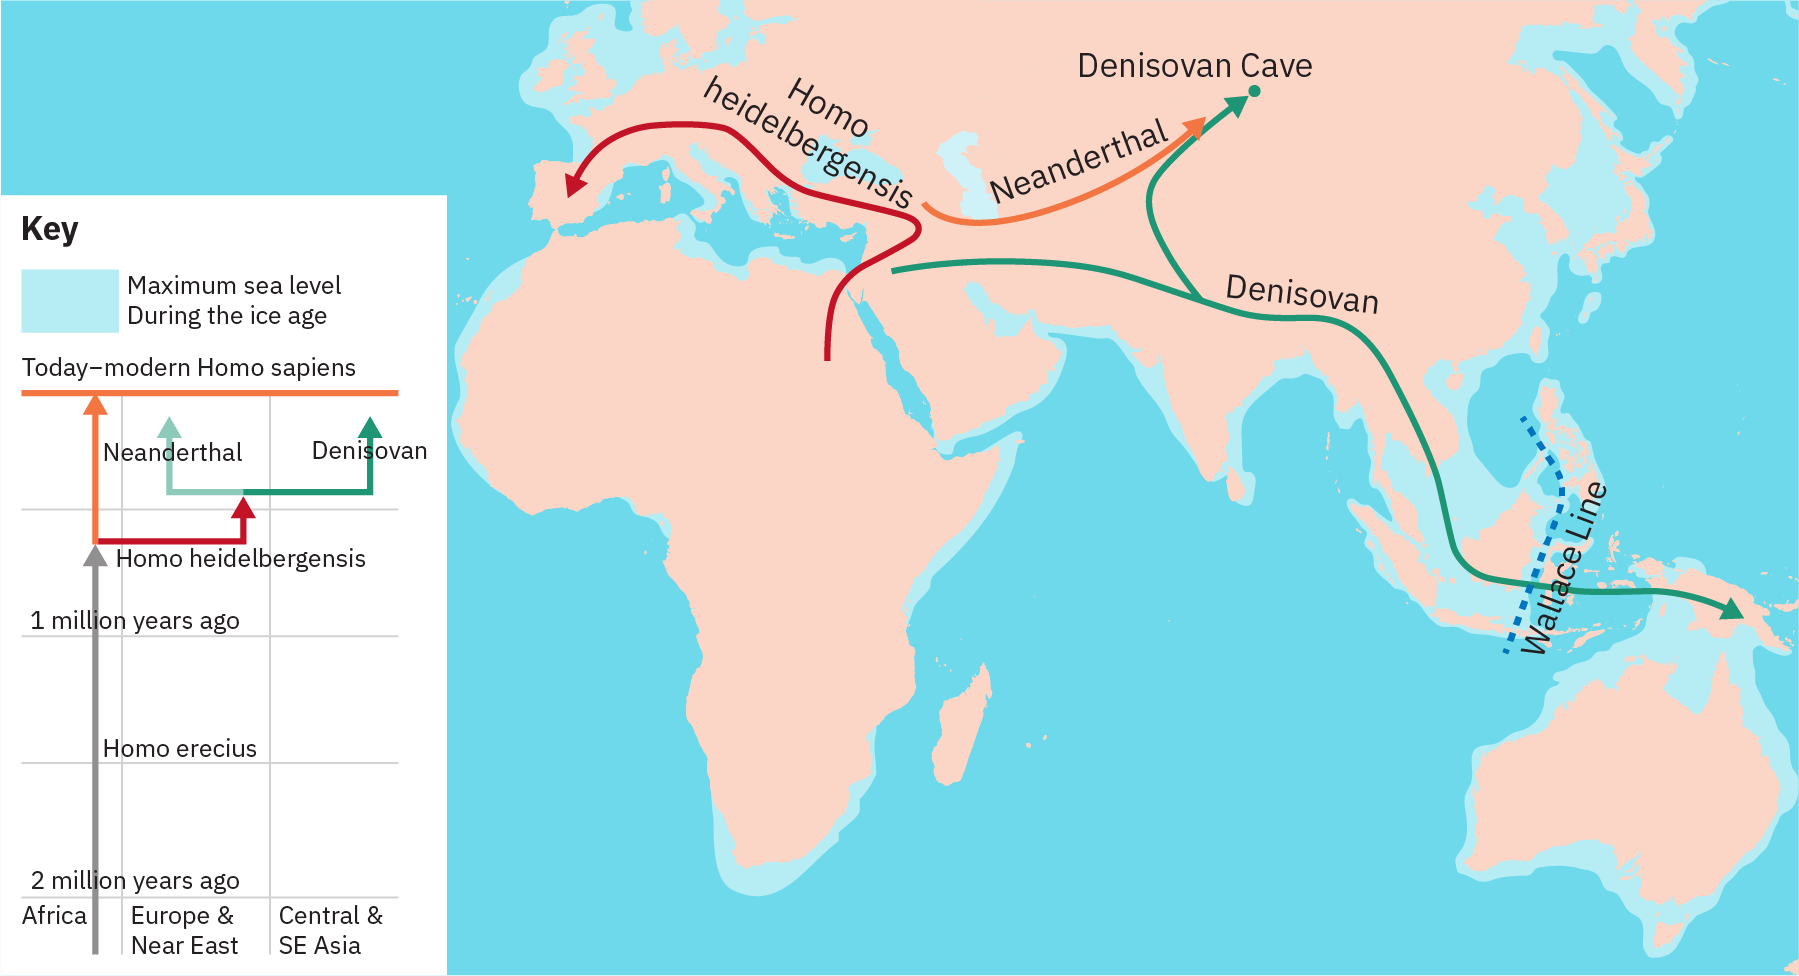 A árvore filogenética mostra uma linha que se estende ao longo do tempo de 2 milhões de anos atrás até o “Homo sapiens hoje moderno”. Saindo dessa linha está uma linha para “Homo heidelbergensis”. Essa linha, por sua vez, se ramifica em linhas para “Neandertal” e “Denisovan”. O mapa mostra denisovanos migrando do Oriente Médio através do subcontinente indiano e para a Nova Zelândia. Uma ramificação fora do caminho denisovano leva à Rússia. Demonstrou-se que os neandertais migraram do Oriente Médio para a Rússia. É demonstrado que o Homo heideibergensis migrou da África, através do Oriente Médio e para a Europa, até a Espanha.